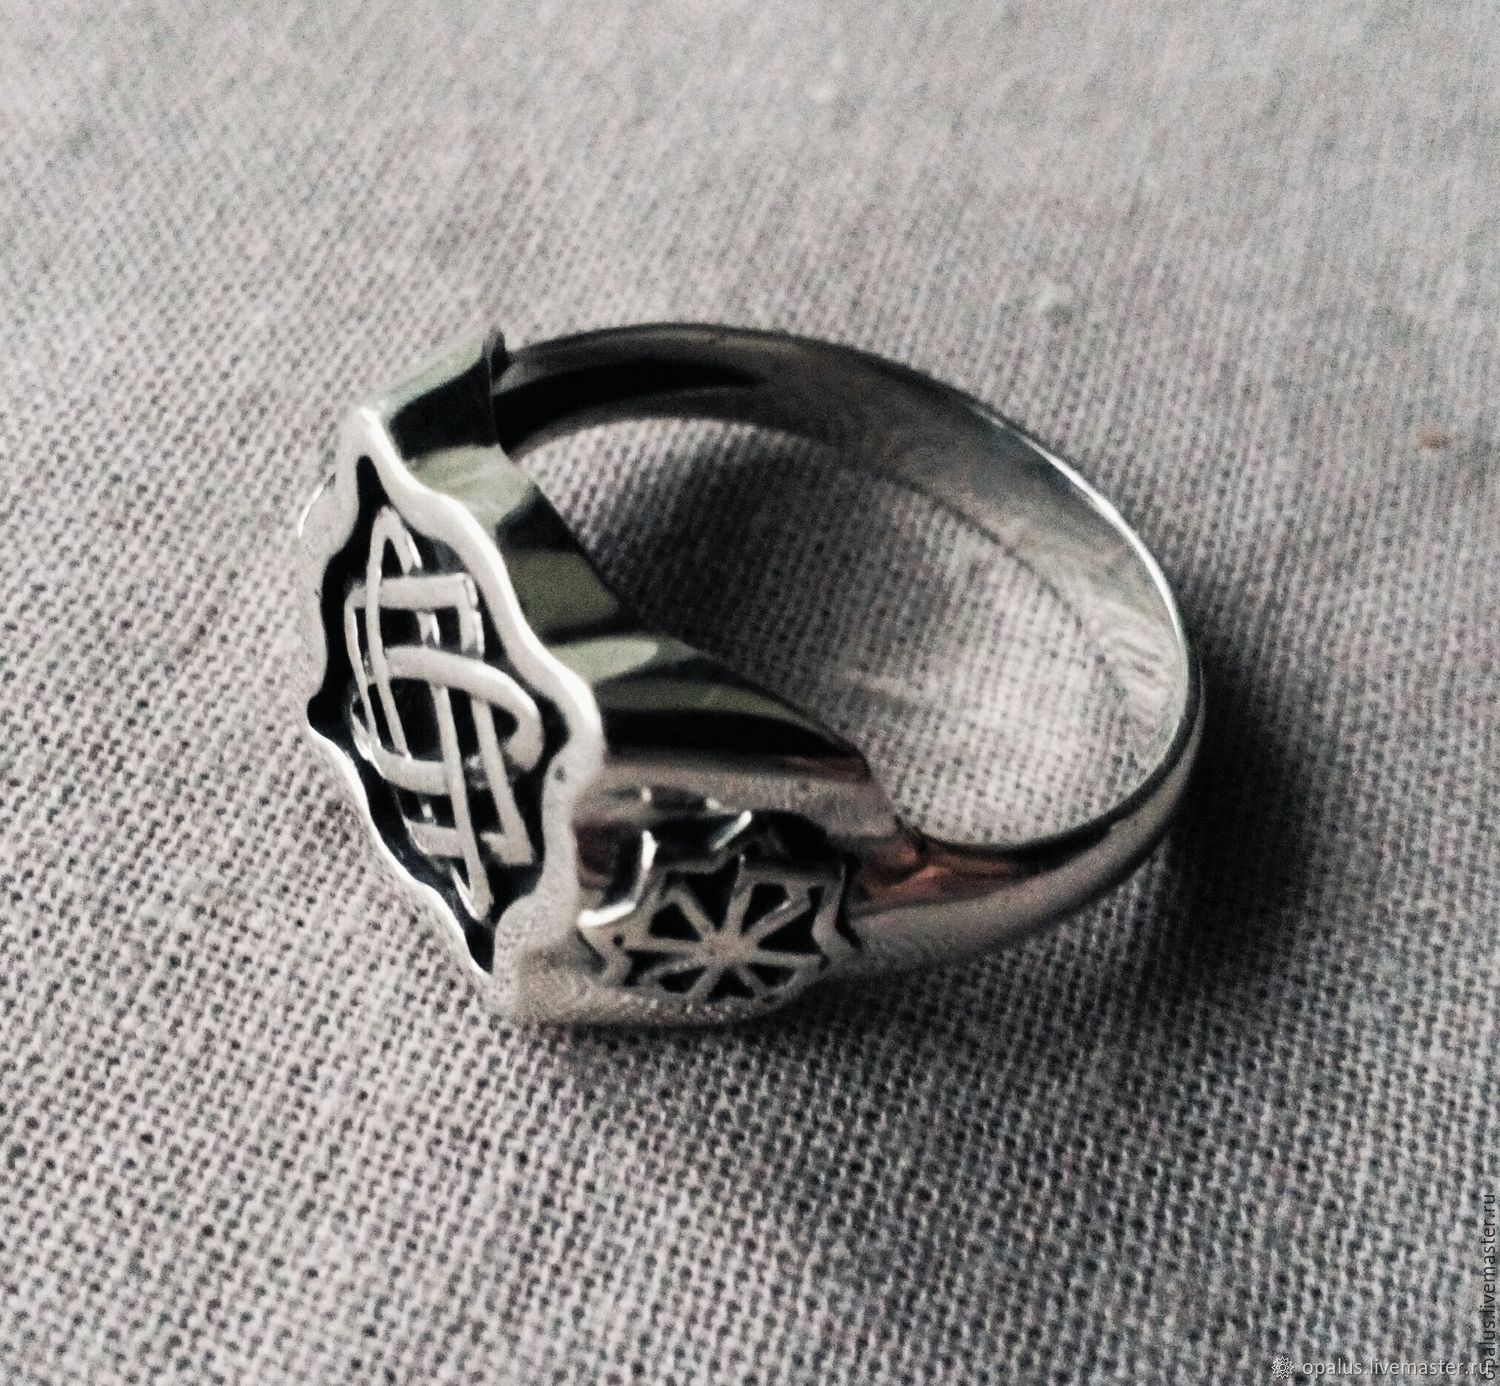 Кольцо со славянской символикой